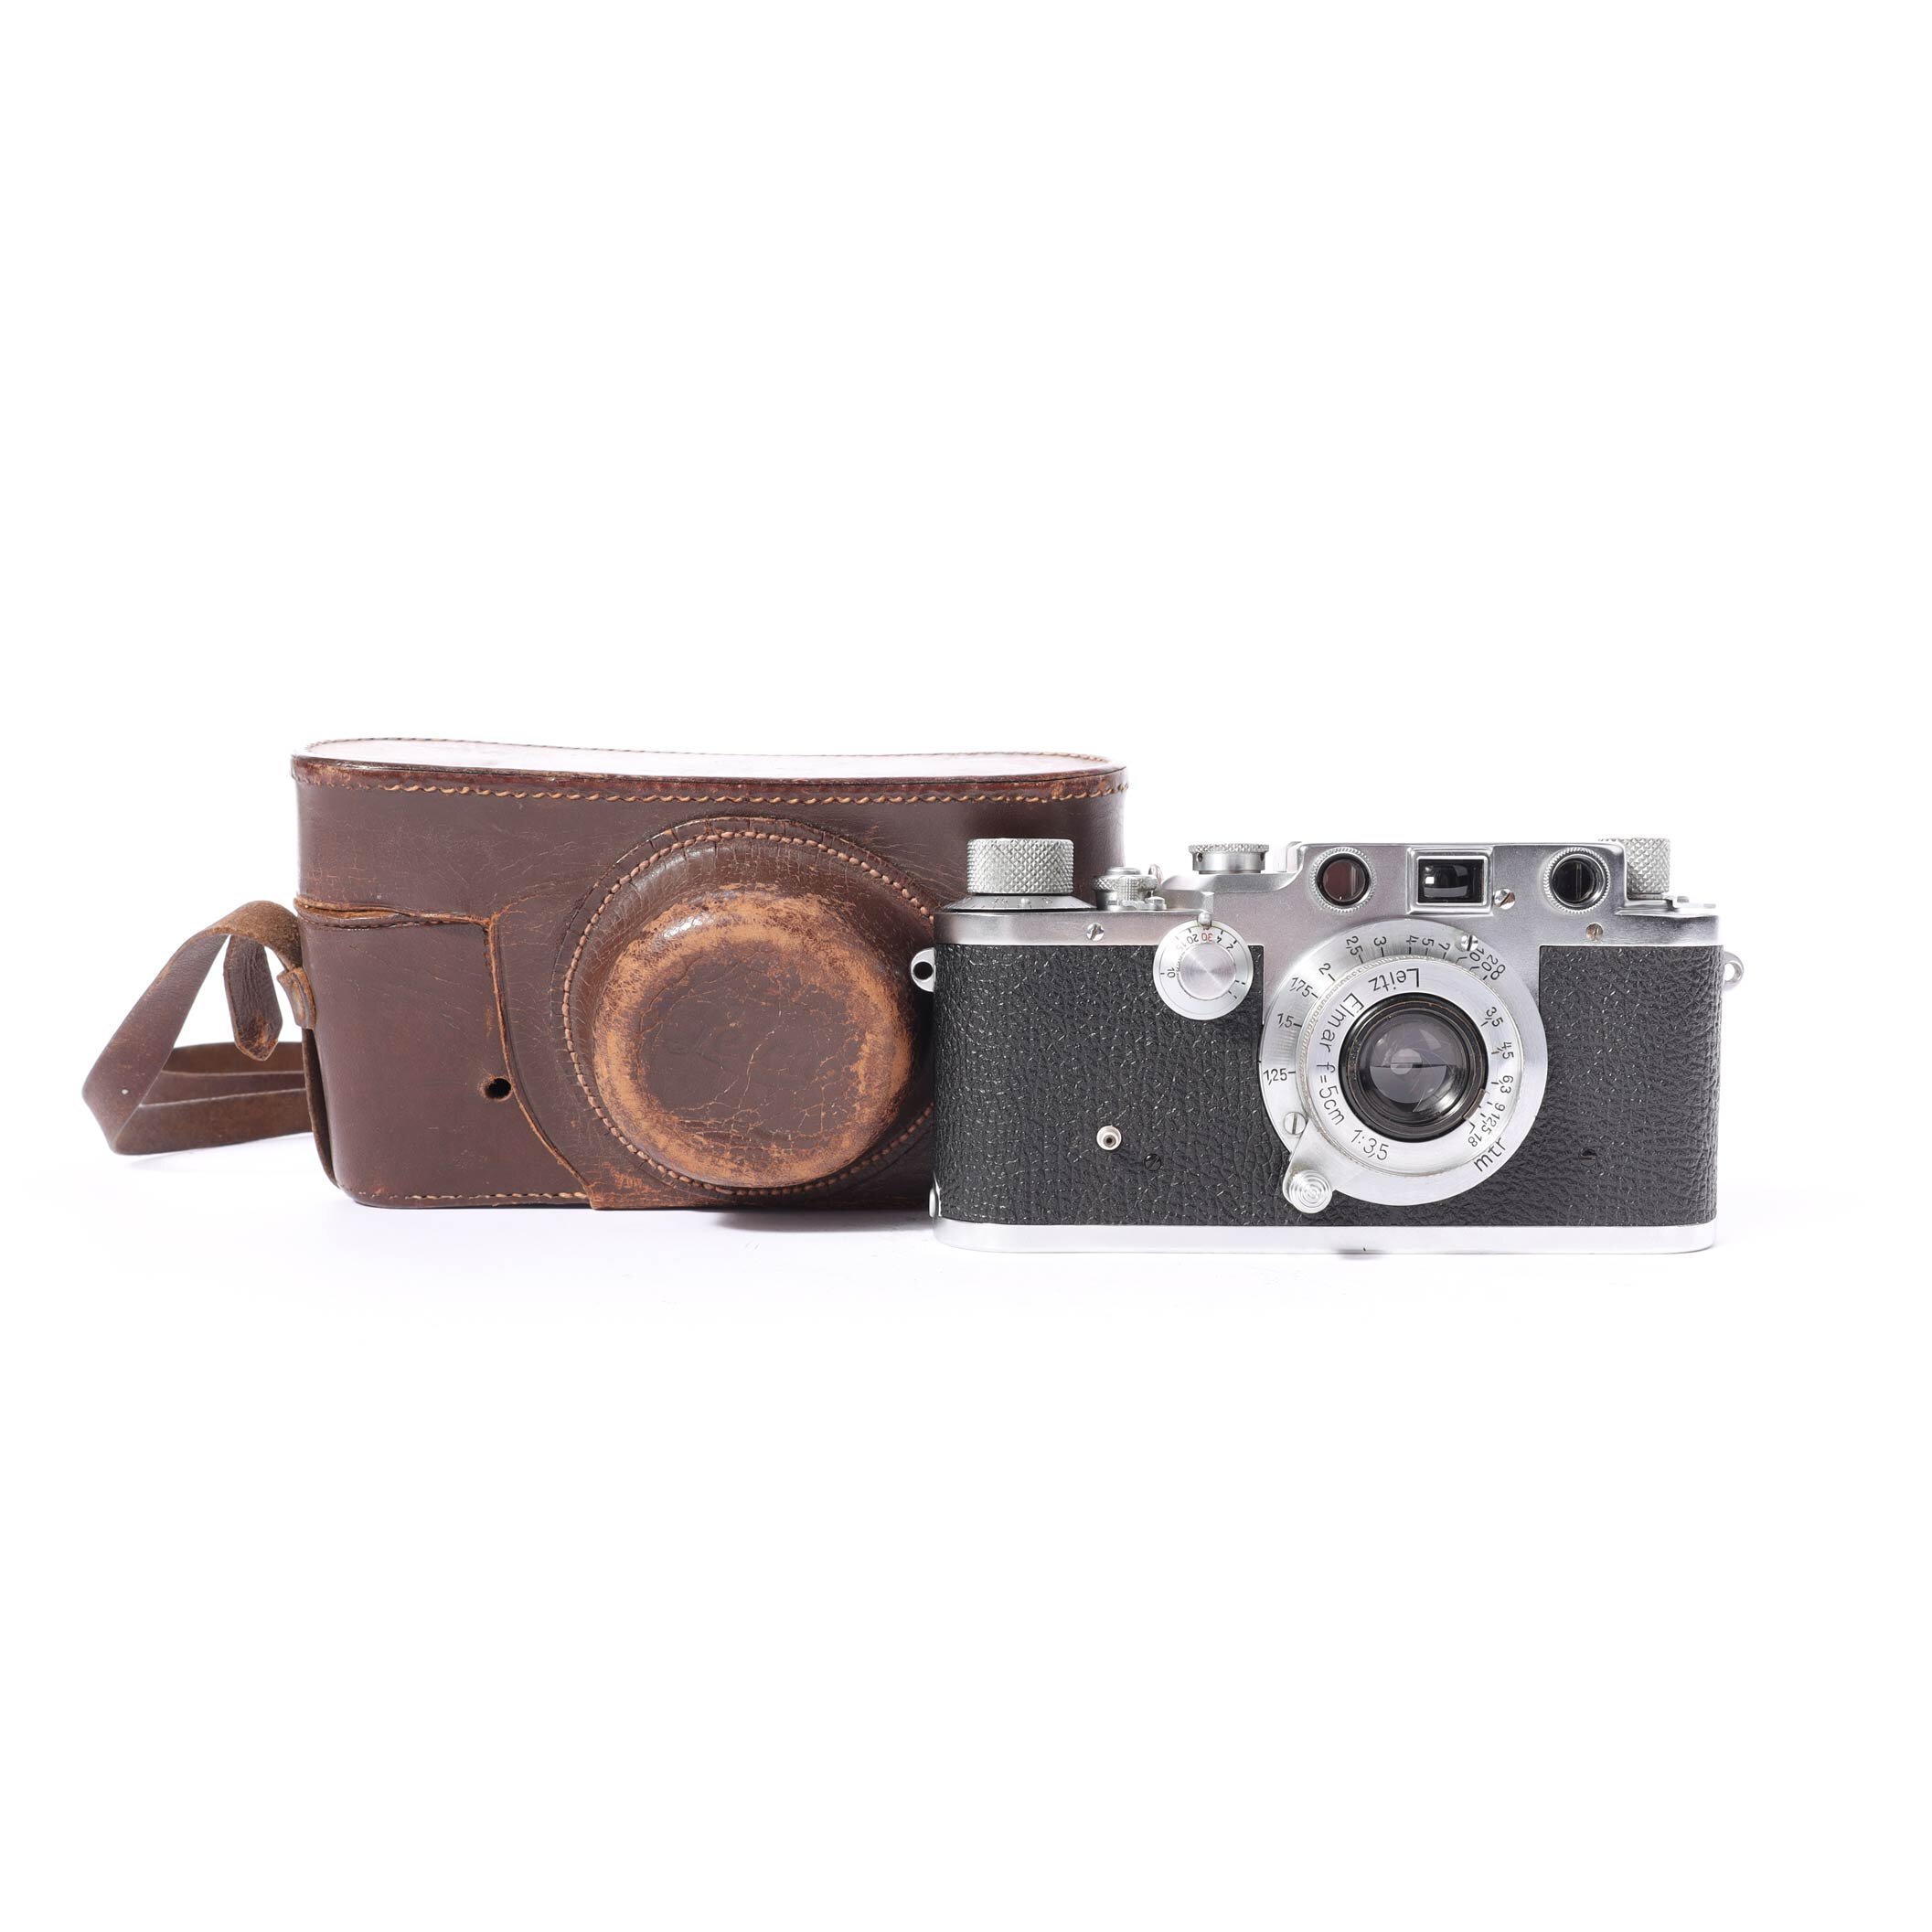 Leitz Leica IIIc Elmar 3,5/50 mm